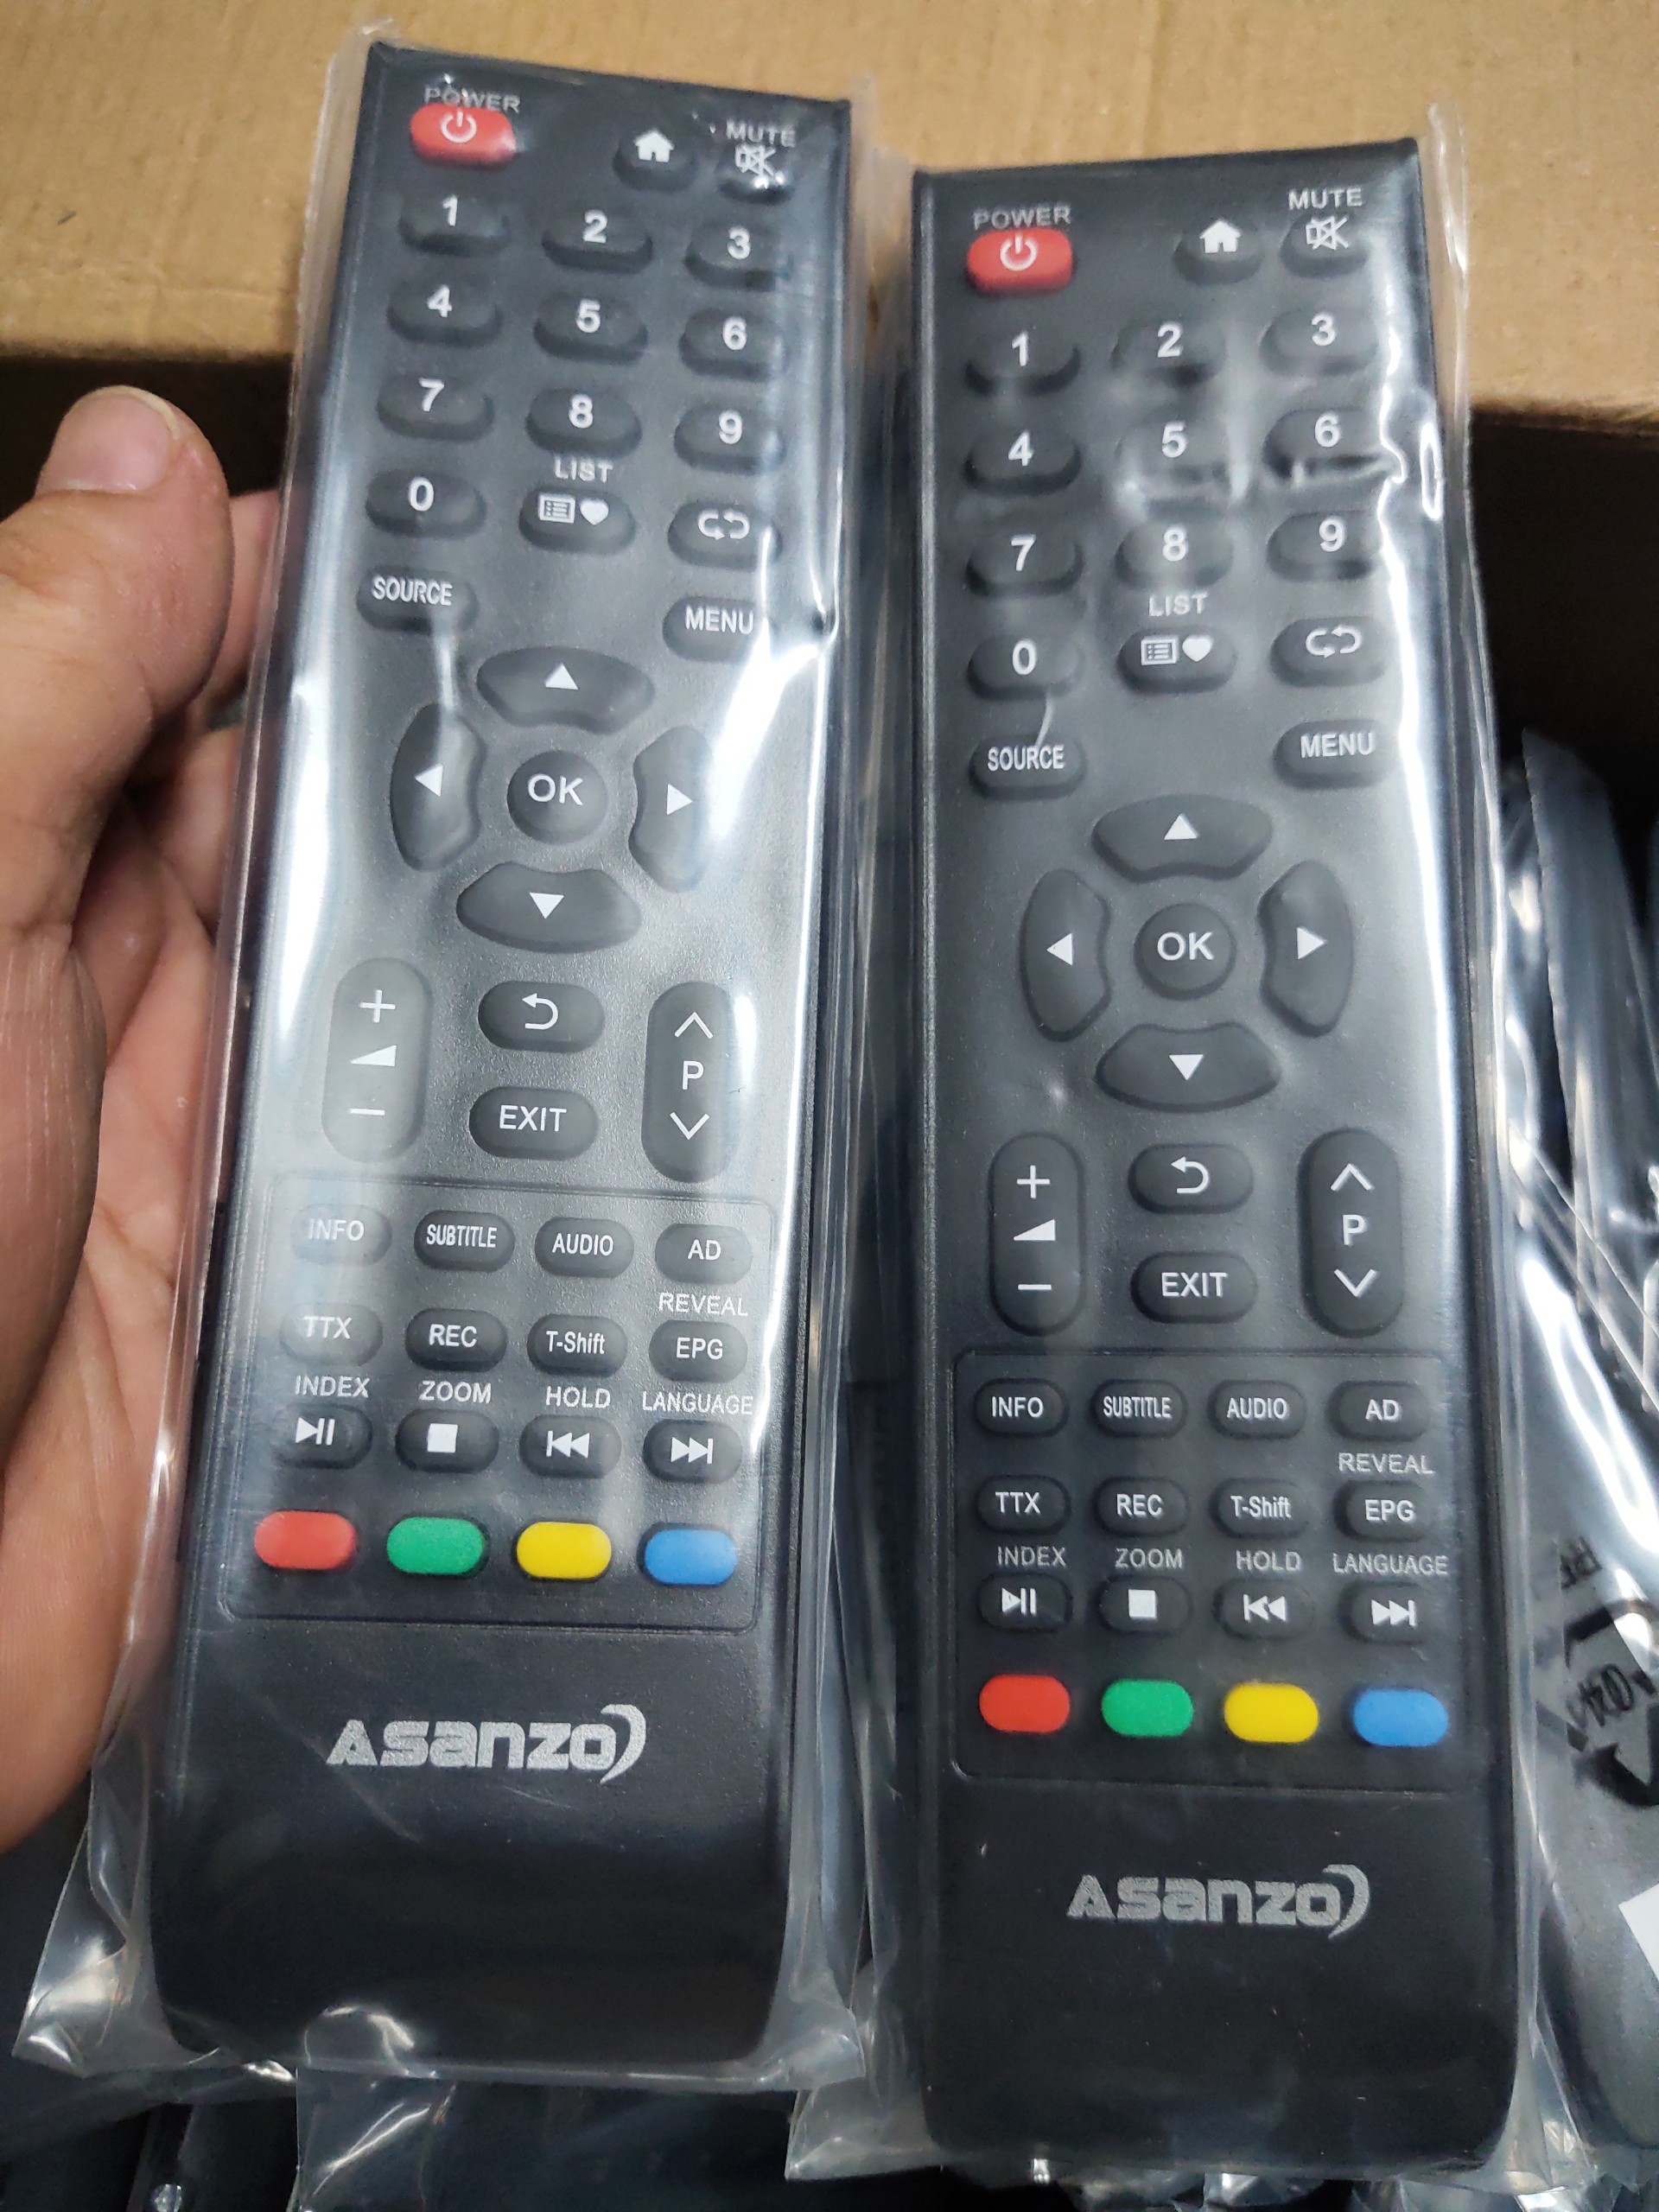 Điều khiển tivi Asanzo các dòng Asanzo LED LCD Smart TV- bảo hành 2 tháng